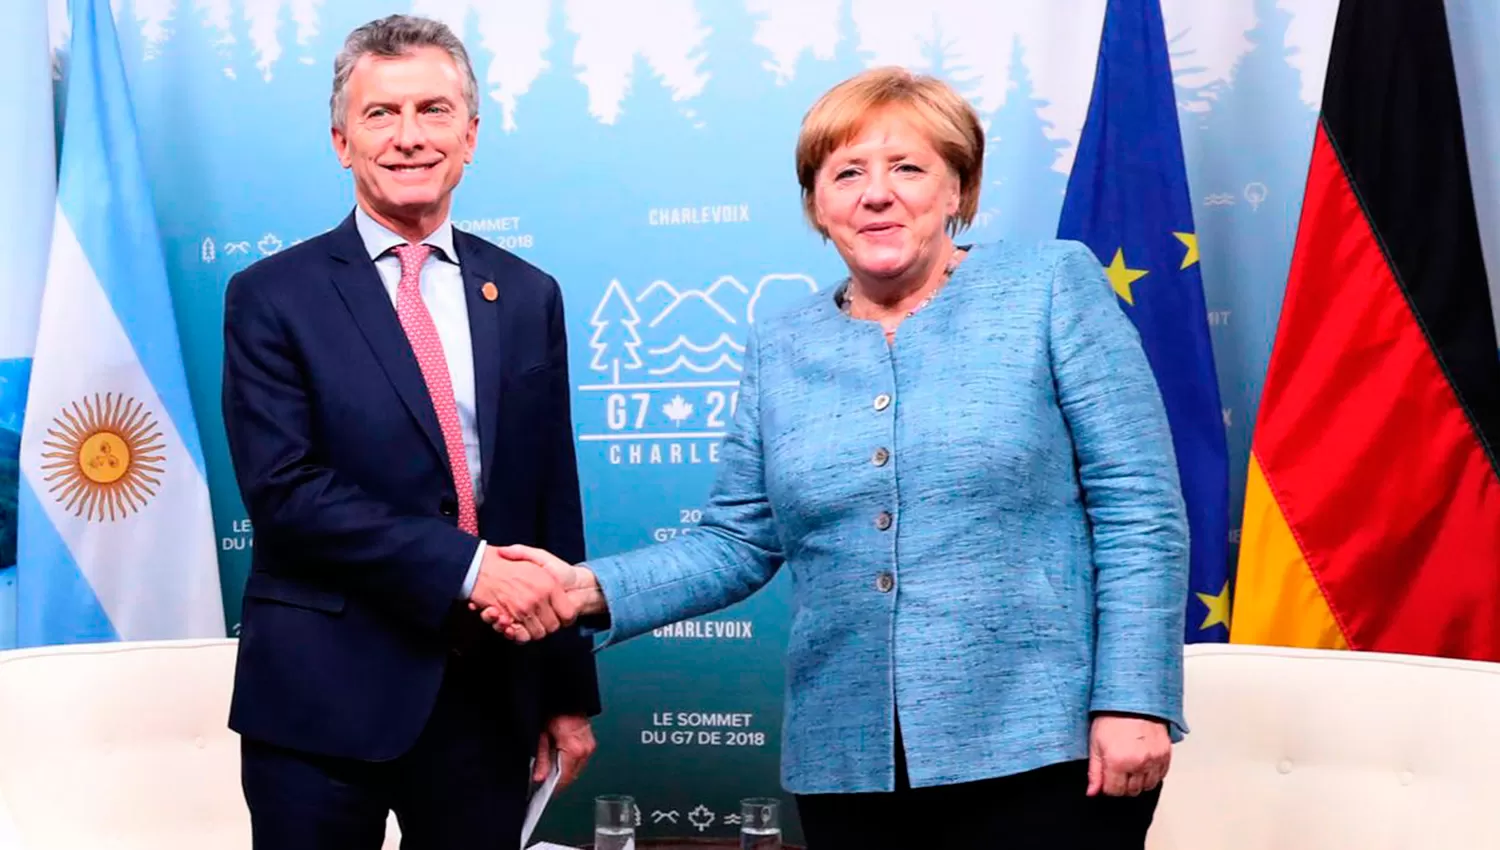 MANDATARIOS. Macri y Merkel en la cumbre del G7. (FOTO TOMADA DE TWITTER)